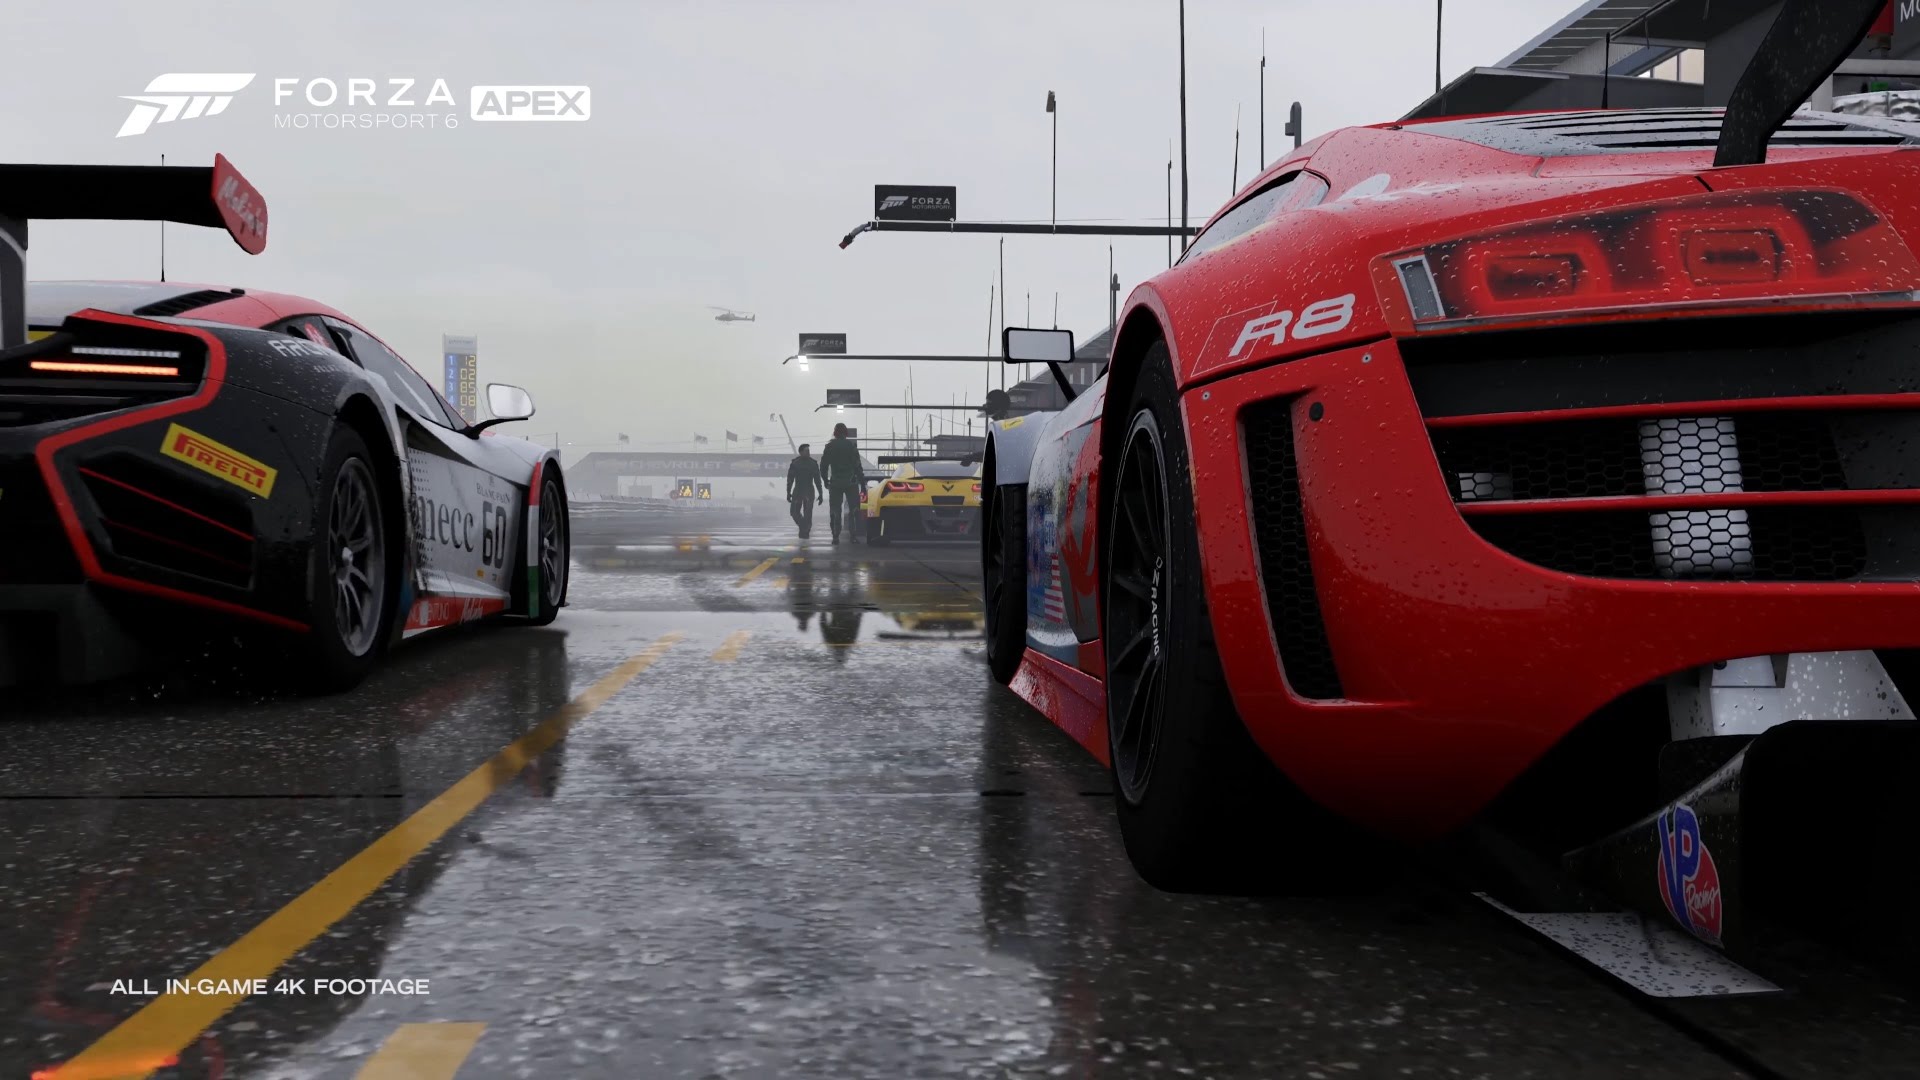 Melhores papéis de parede de Forza Motorsport 6: Apex para tela do telefone